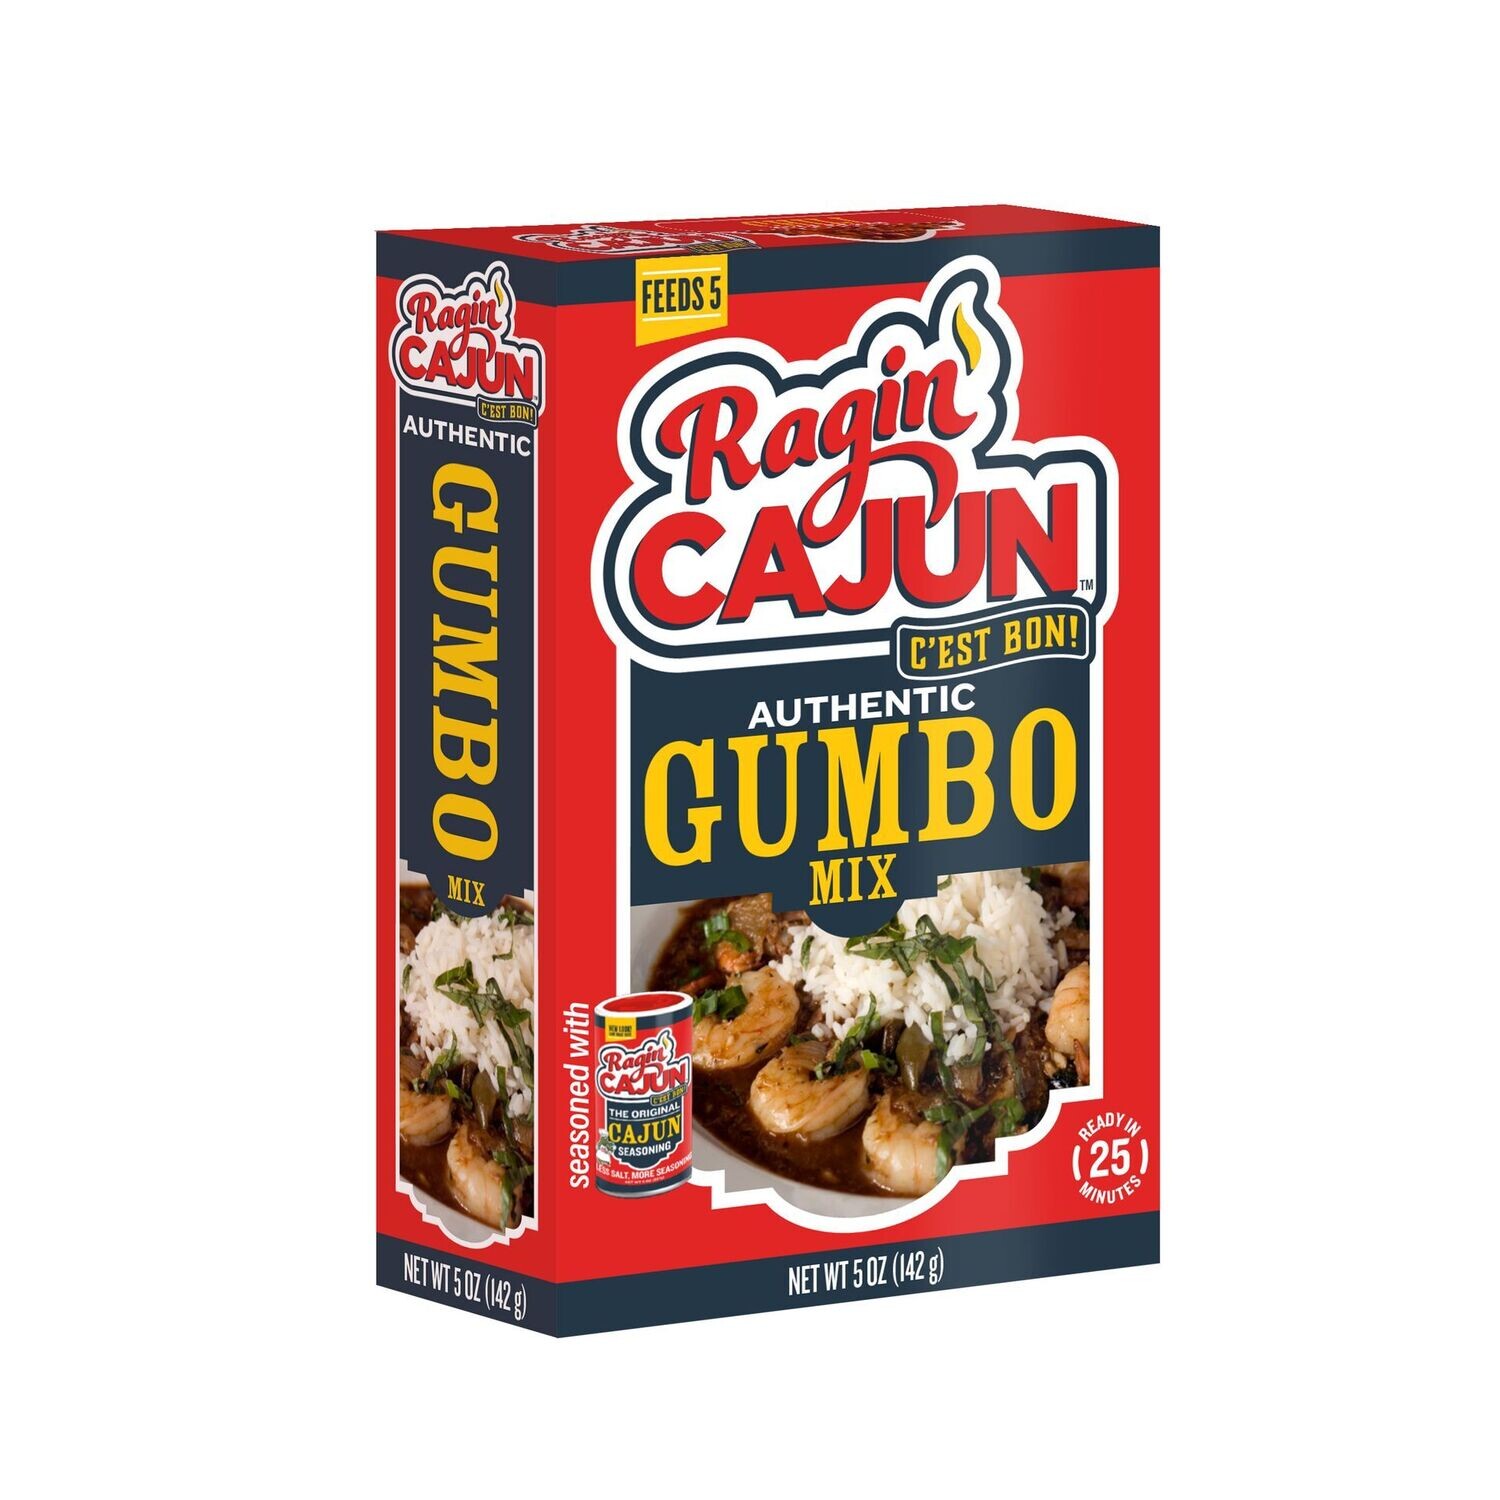 Ragin’ Cajun Authentic Gumbo